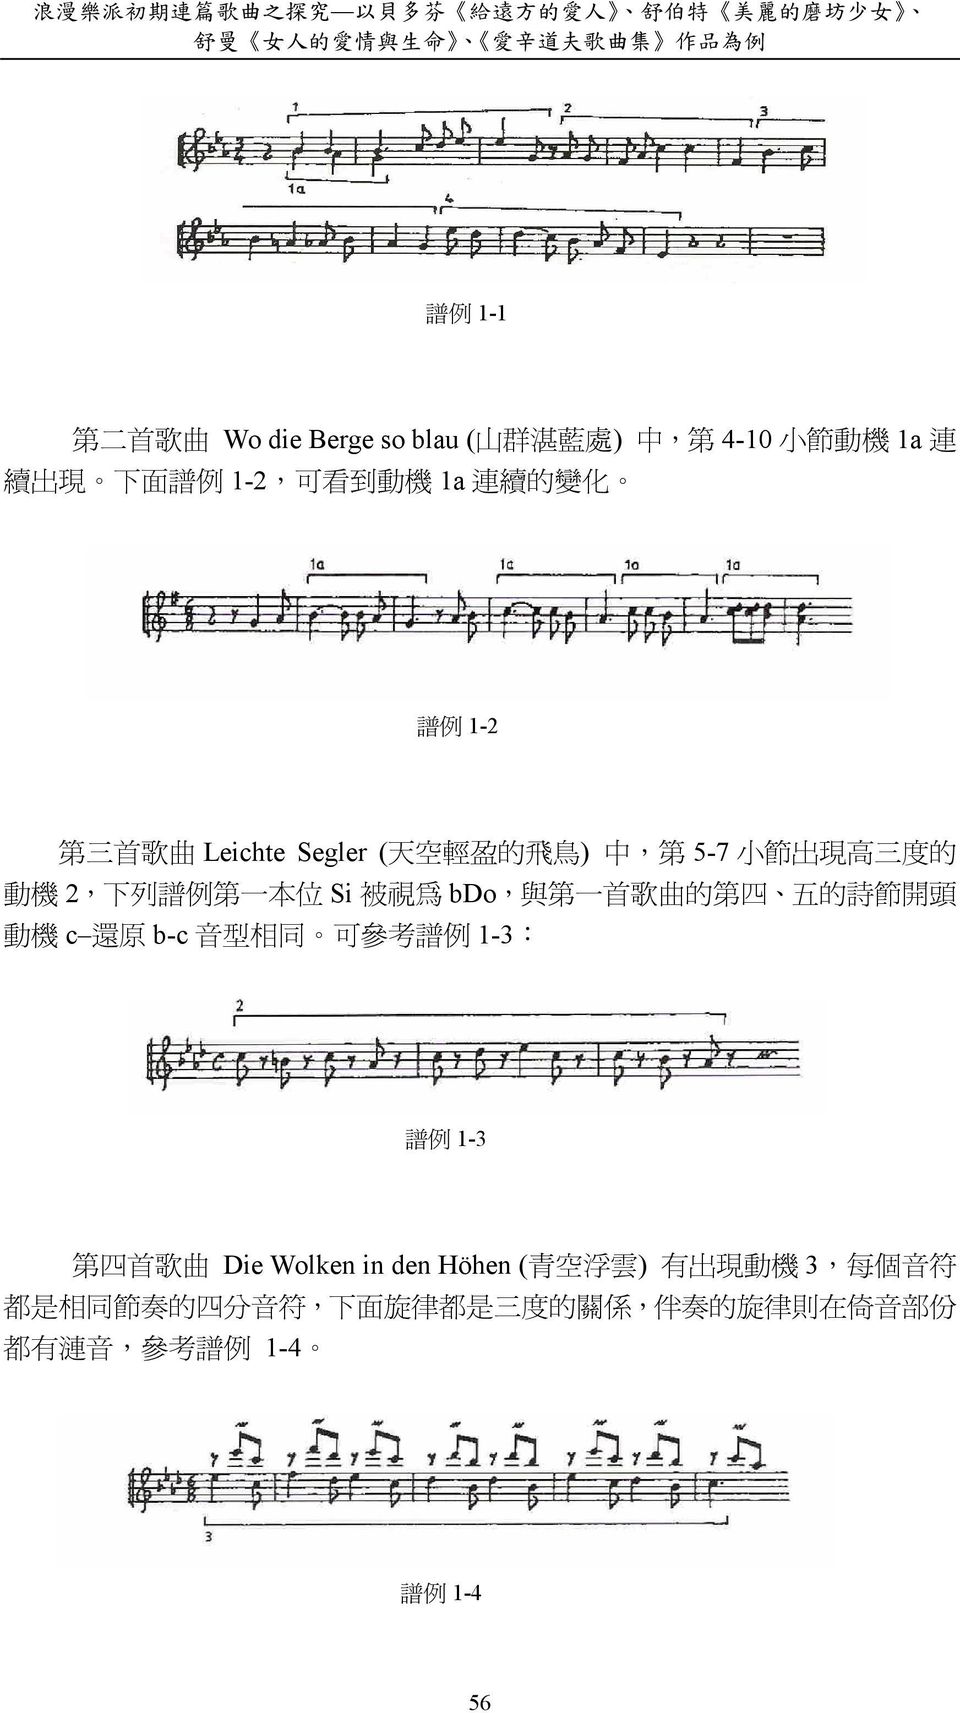 列 譜 例 第 一 本 位 Si 被 視 為 bdo, 與 第 一 首 歌 曲 的 第 四 五 的 詩 節 開 頭 動 機 c 還 原 b-c 音 型 相 同 可 參 考 譜 例 1-3: 譜 例 1-3 第 四 首 歌 曲 Die Wolken in den